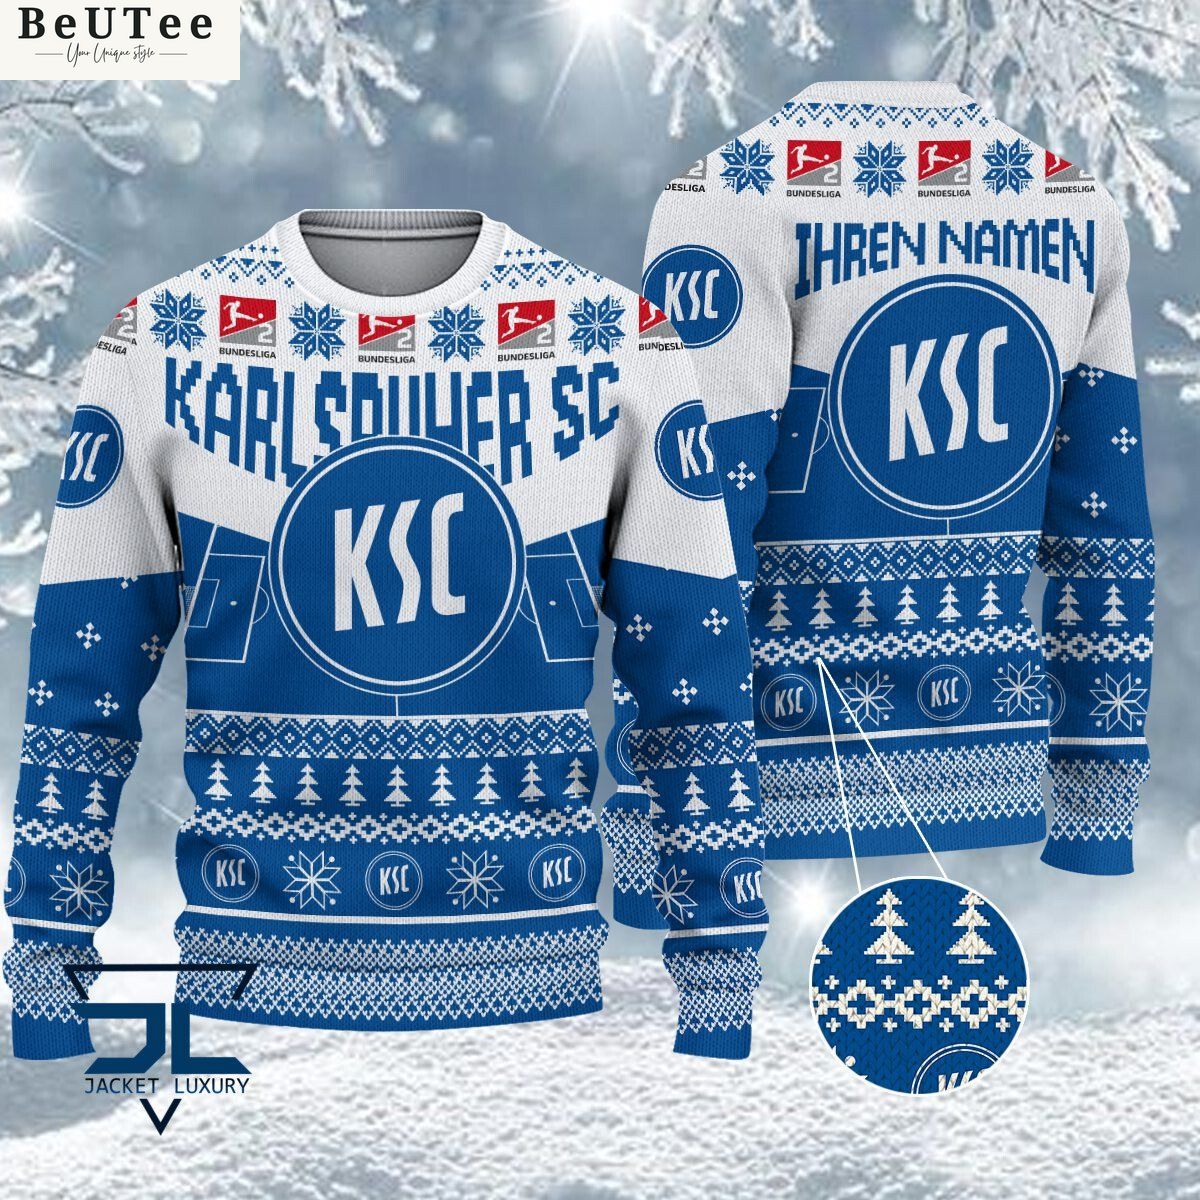 karlsruher sc limited for bundesliga fans ugly sweater jumper 1 BHGSR.jpg